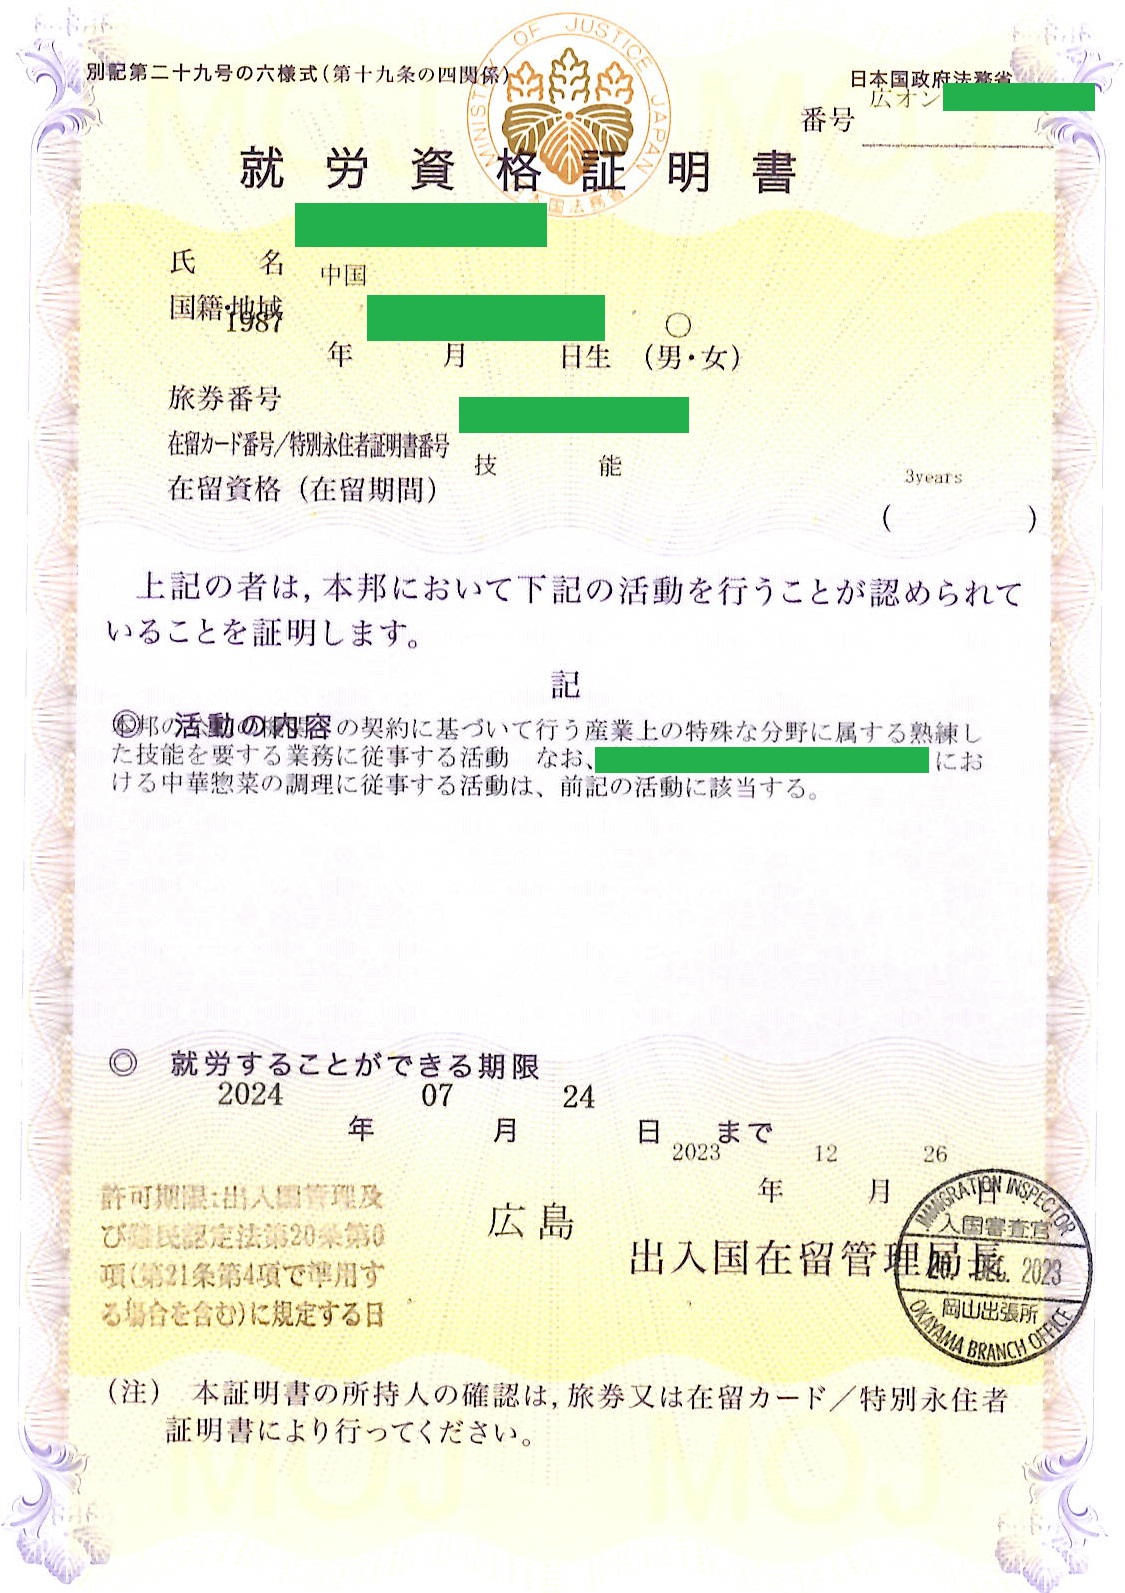 中国人の就労資格証明書を取得